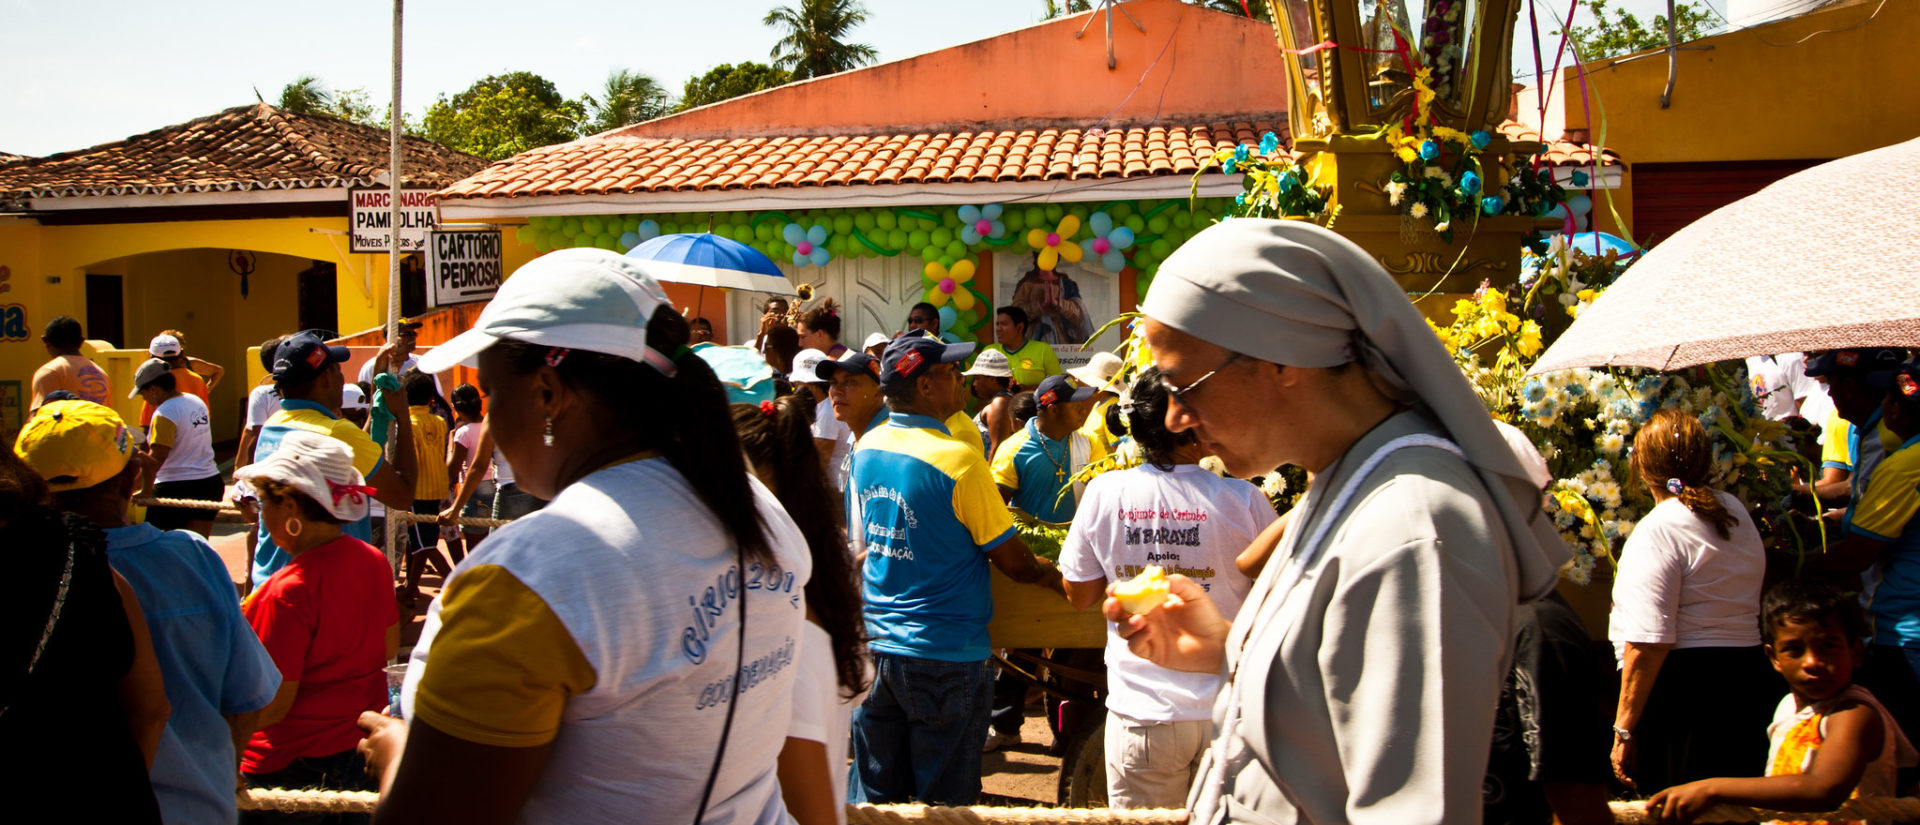 Les religieuses en Amazonie jouent un rôle pastoral très important | © Eduardo Fonseca Arraes/Flickr/CC BY-NC-ND 2.0